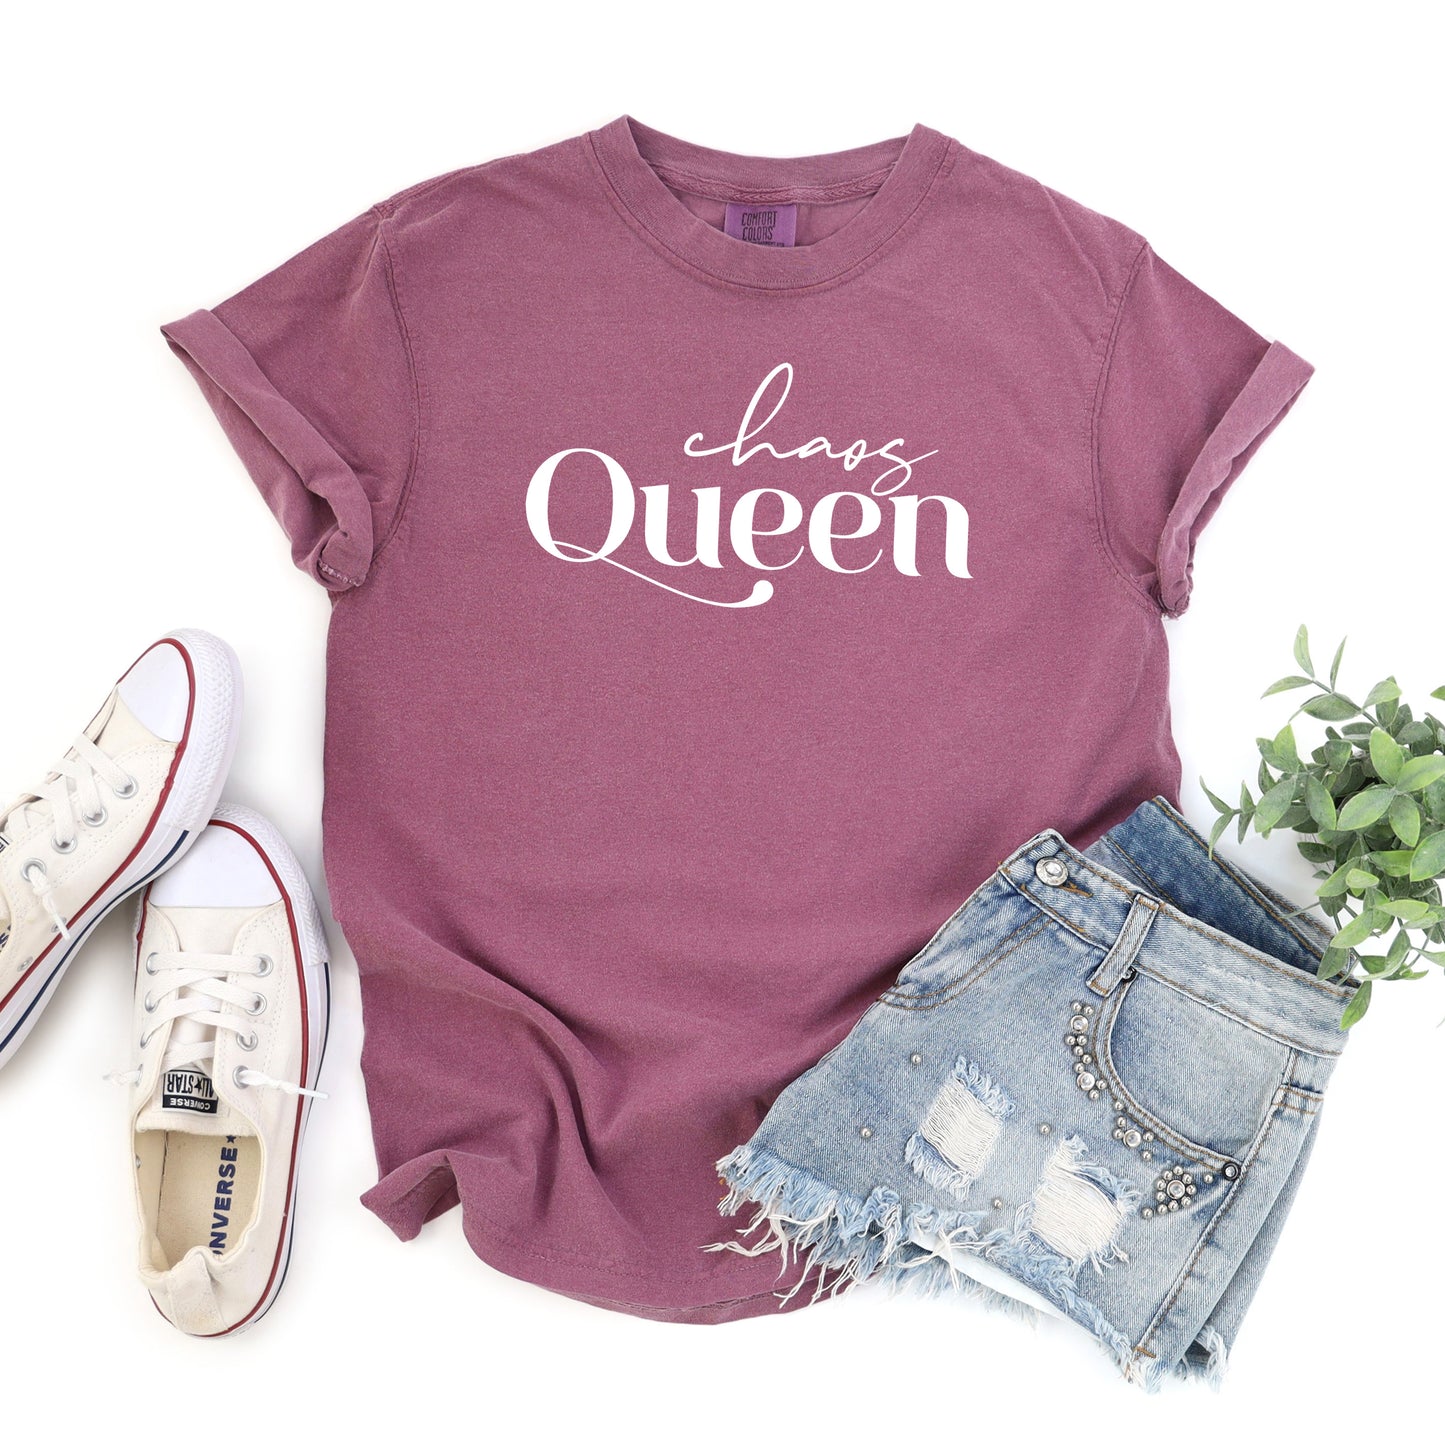 Chaos Queen | Garment Dyed Short Sleeve Tee